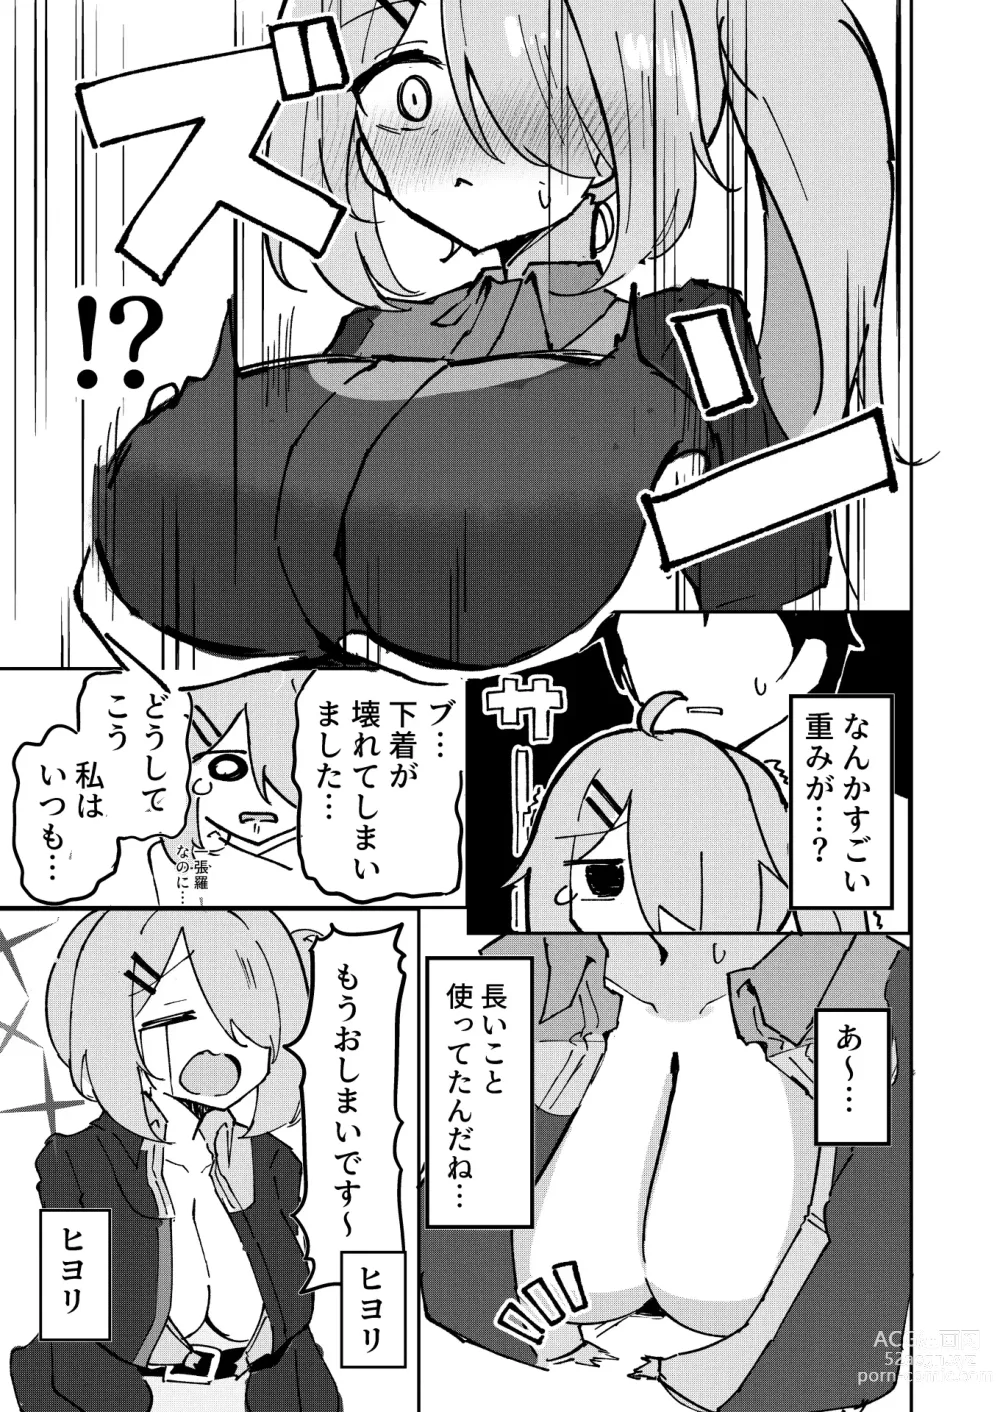 Page 5 of doujinshi Sensei to Seito wa Mou Owari